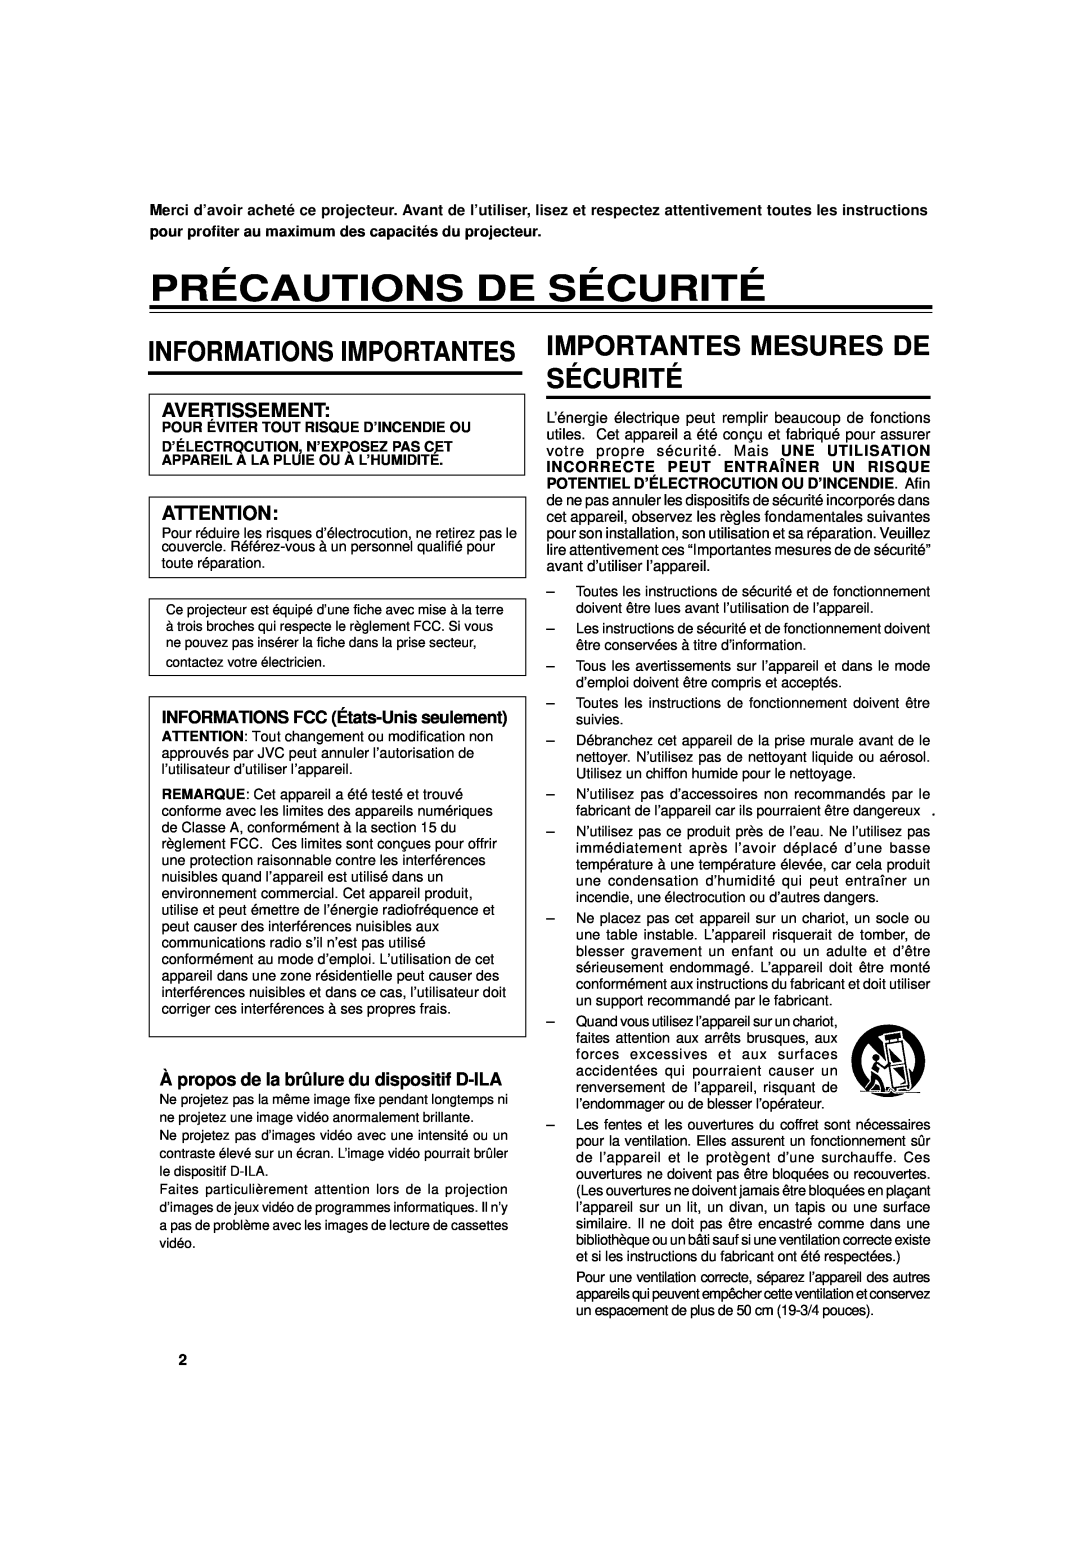 JVC DLA-G15U manual Précautions De Sécurité, Importantes Mesures De Sécurité, Informations Importantes 